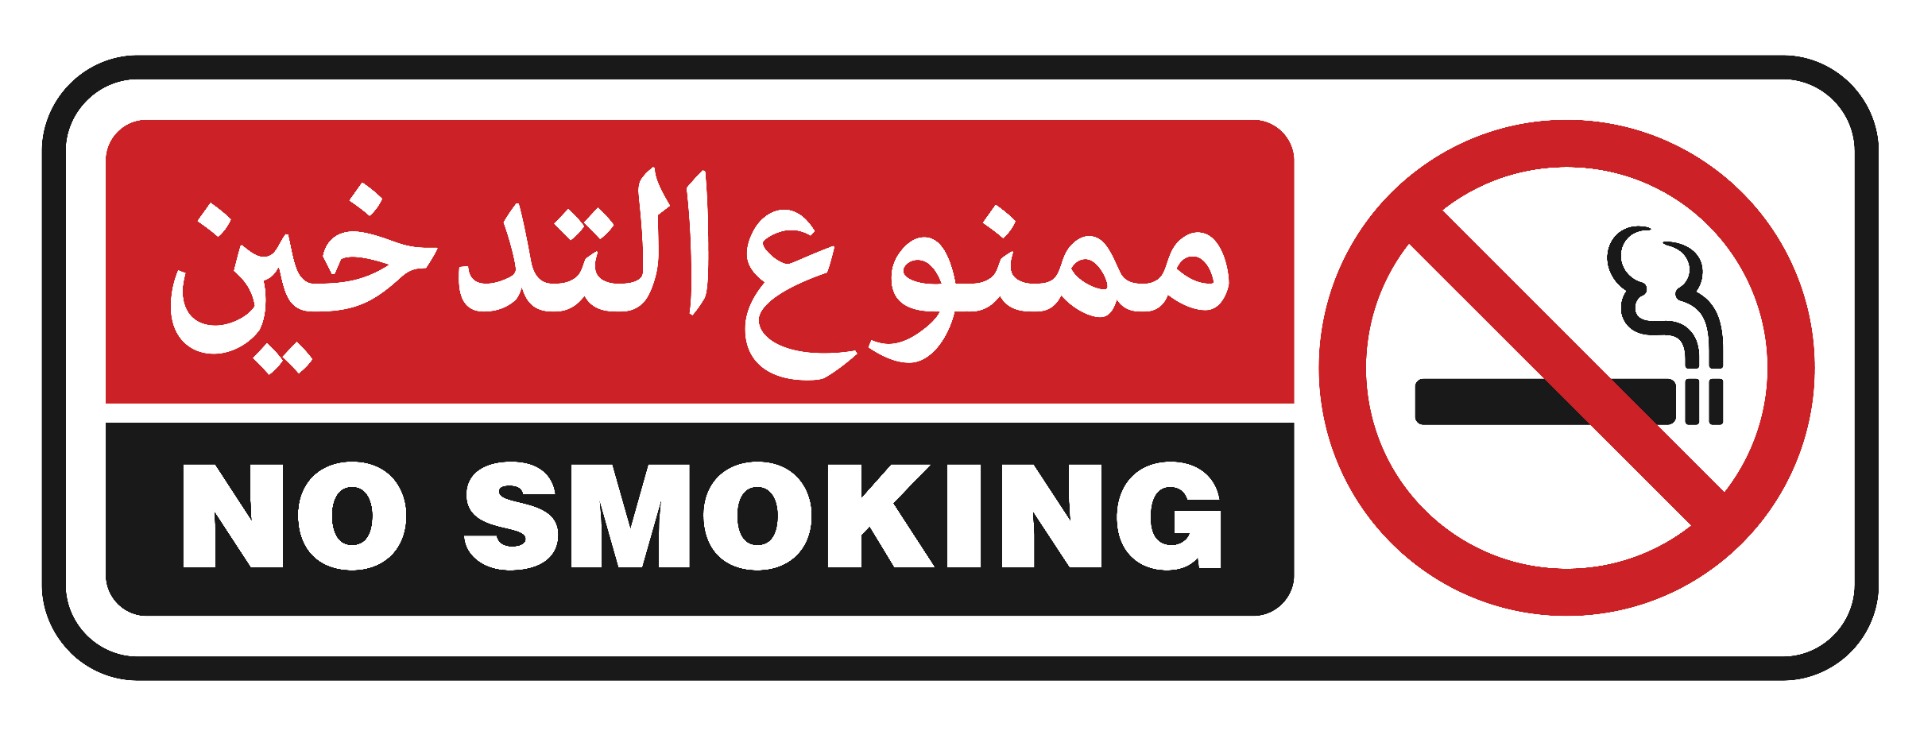 เขตปลอดบุหรี่ภาษาอาหรับ